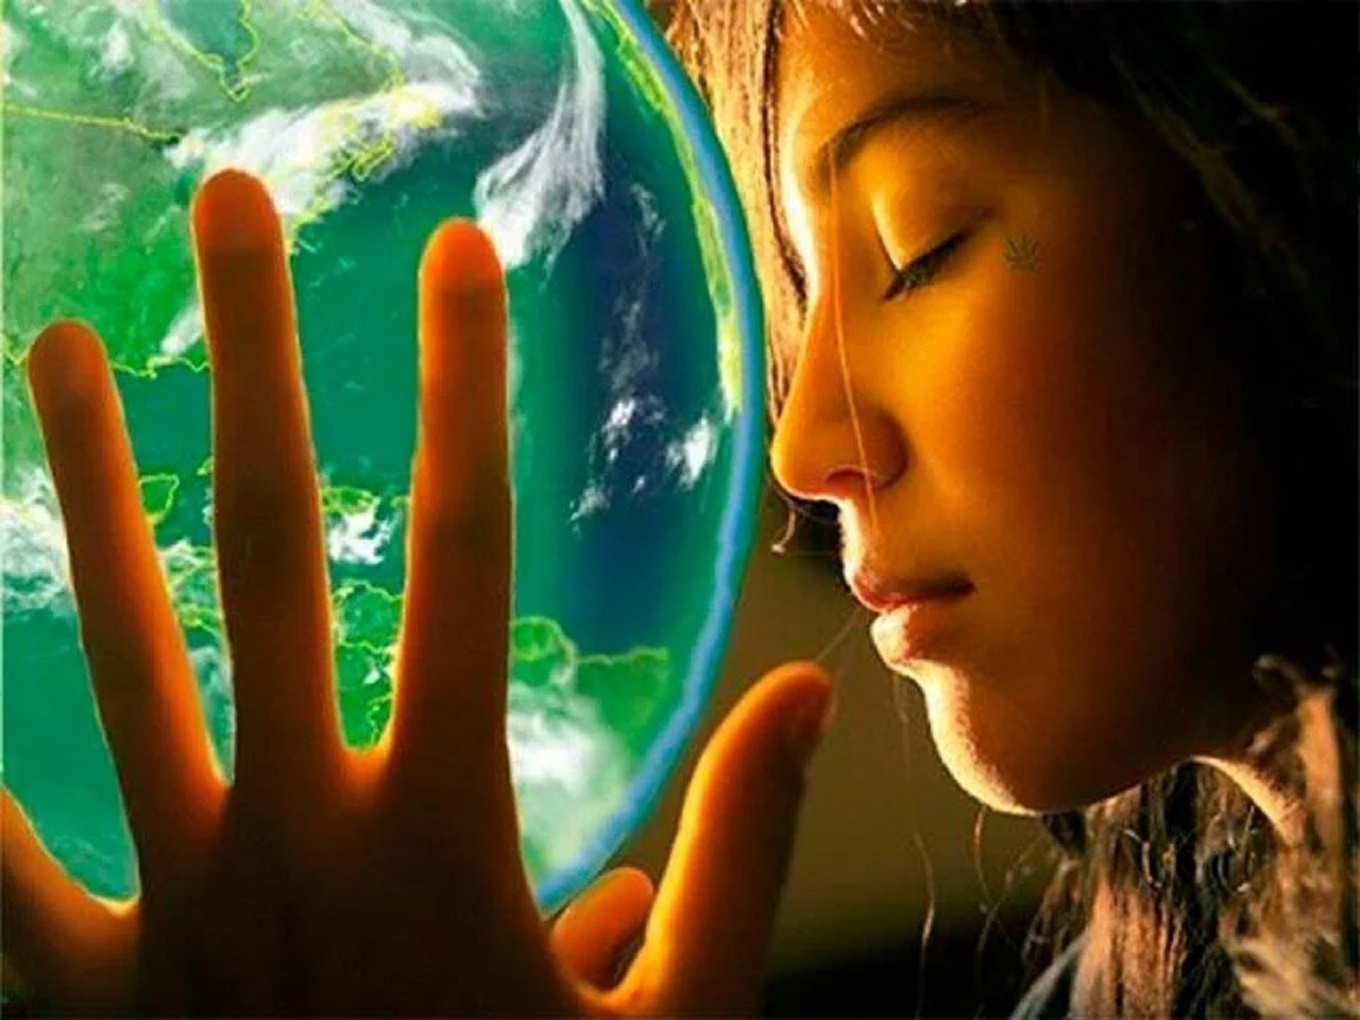 Интерес к внутреннему миру. Творить мир. Познание себя. Мир и человек. Сила мысли творит чудеса.